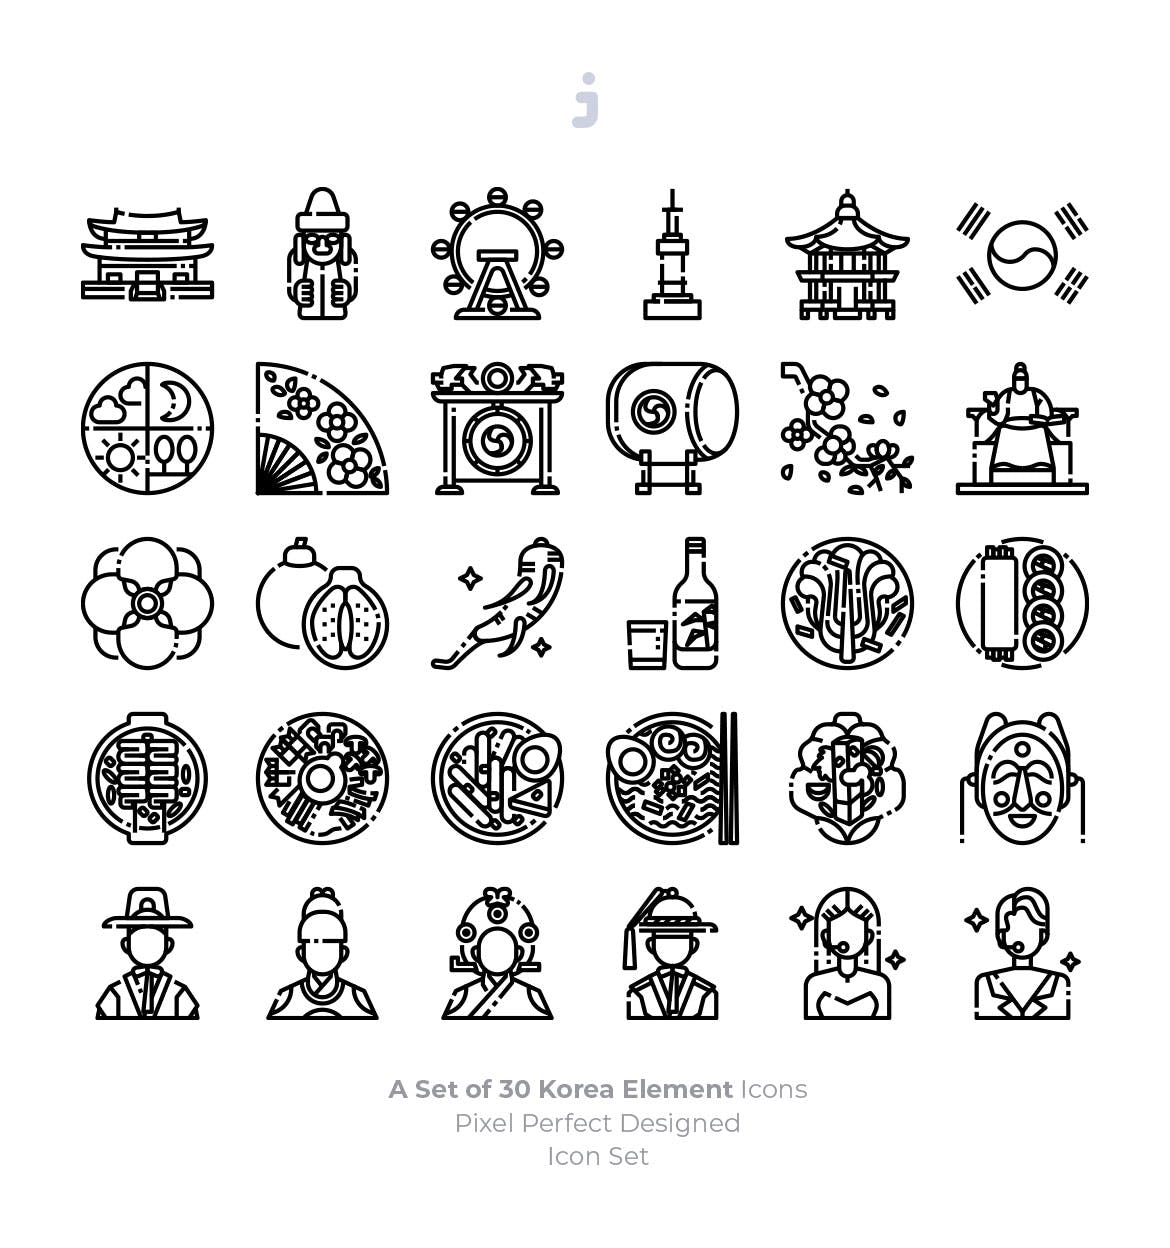 30个韩国元素描边风图标源文件下载30 Korea Element Icons插图2